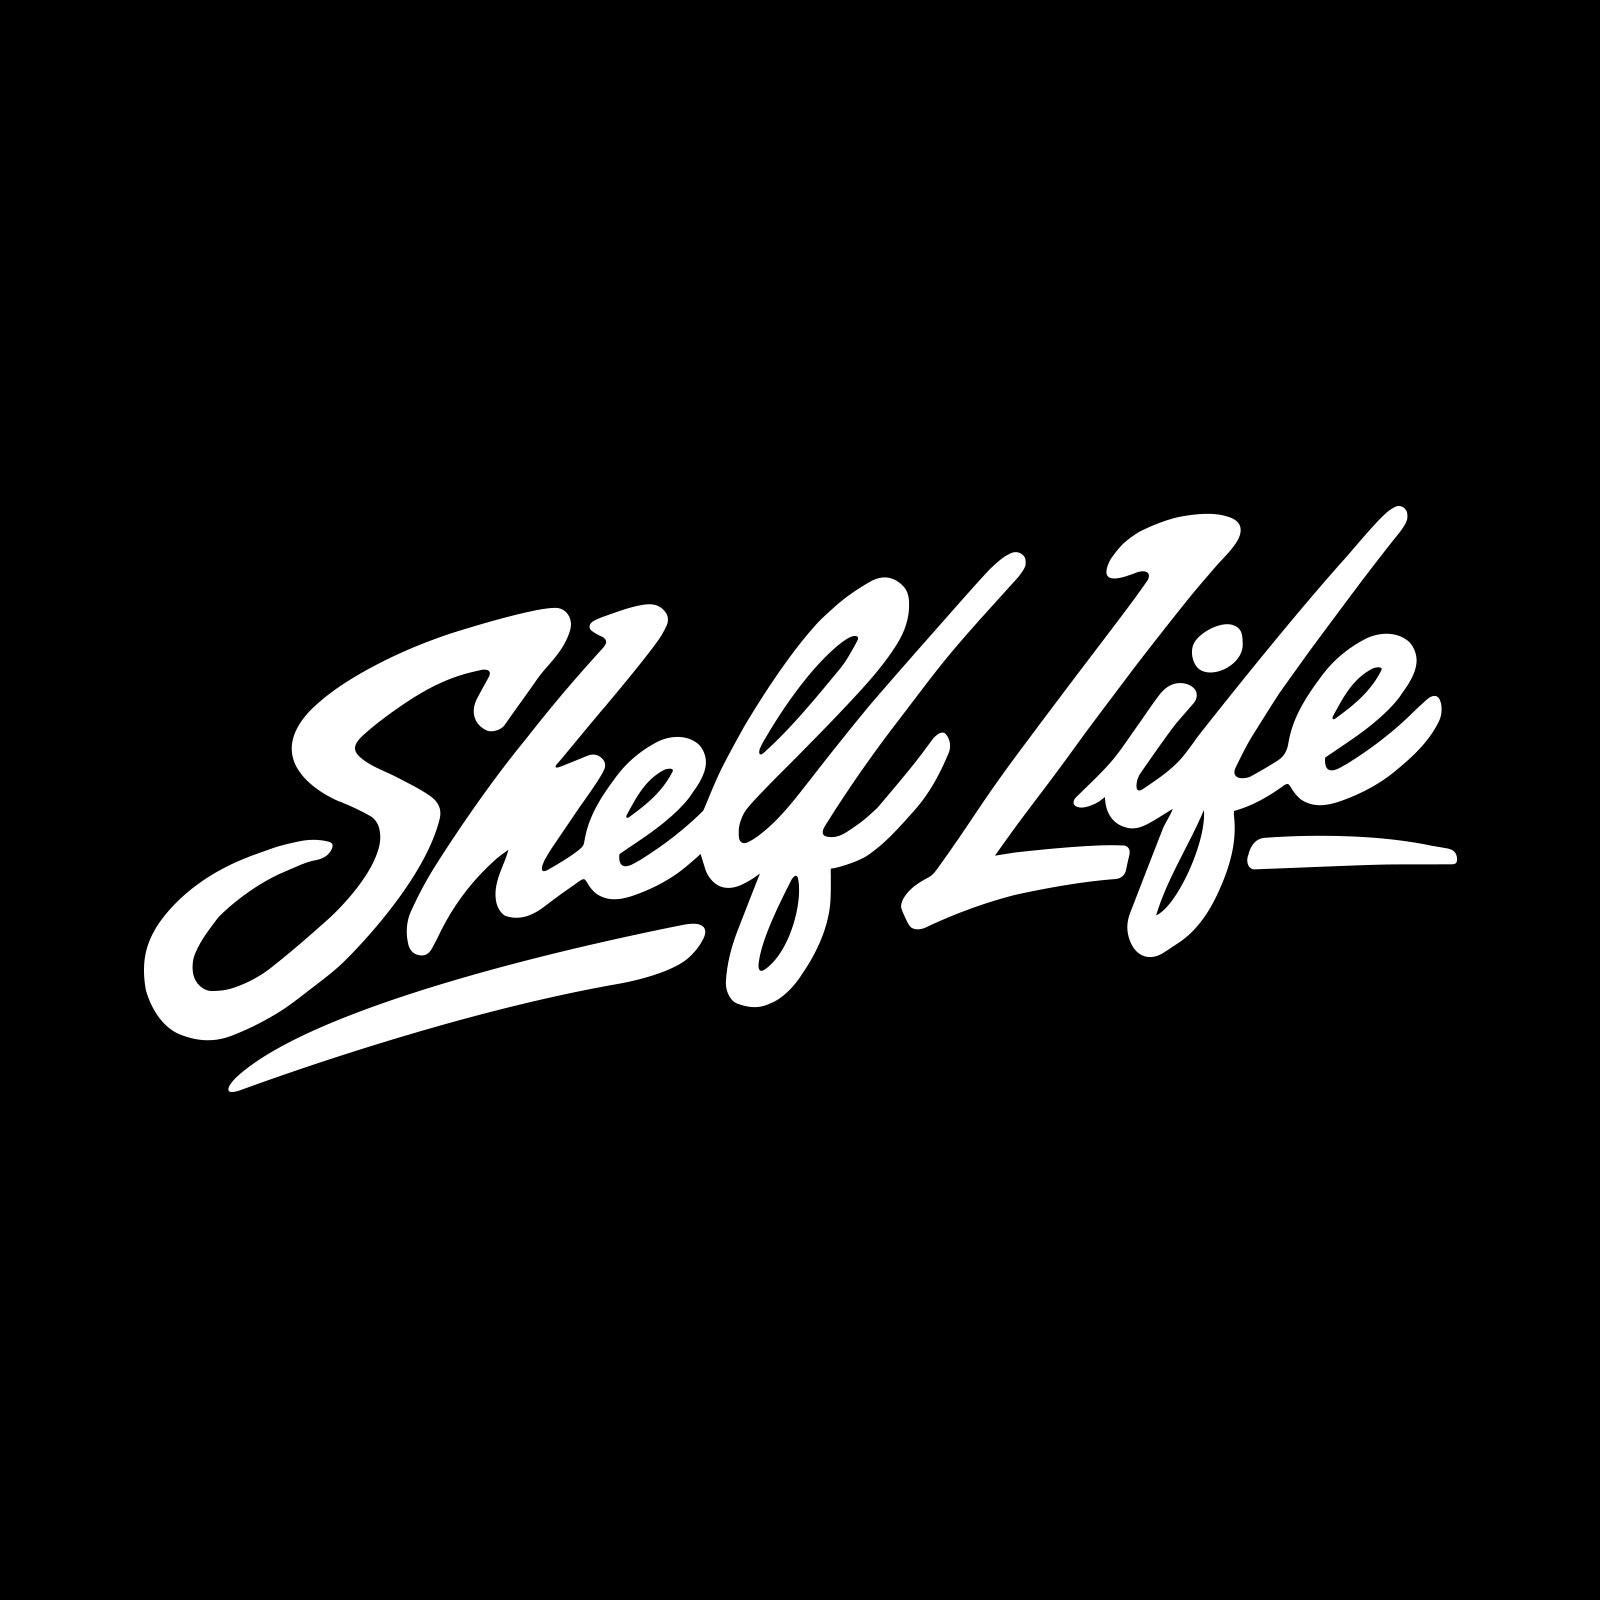 SHELF-LIFE.jpg